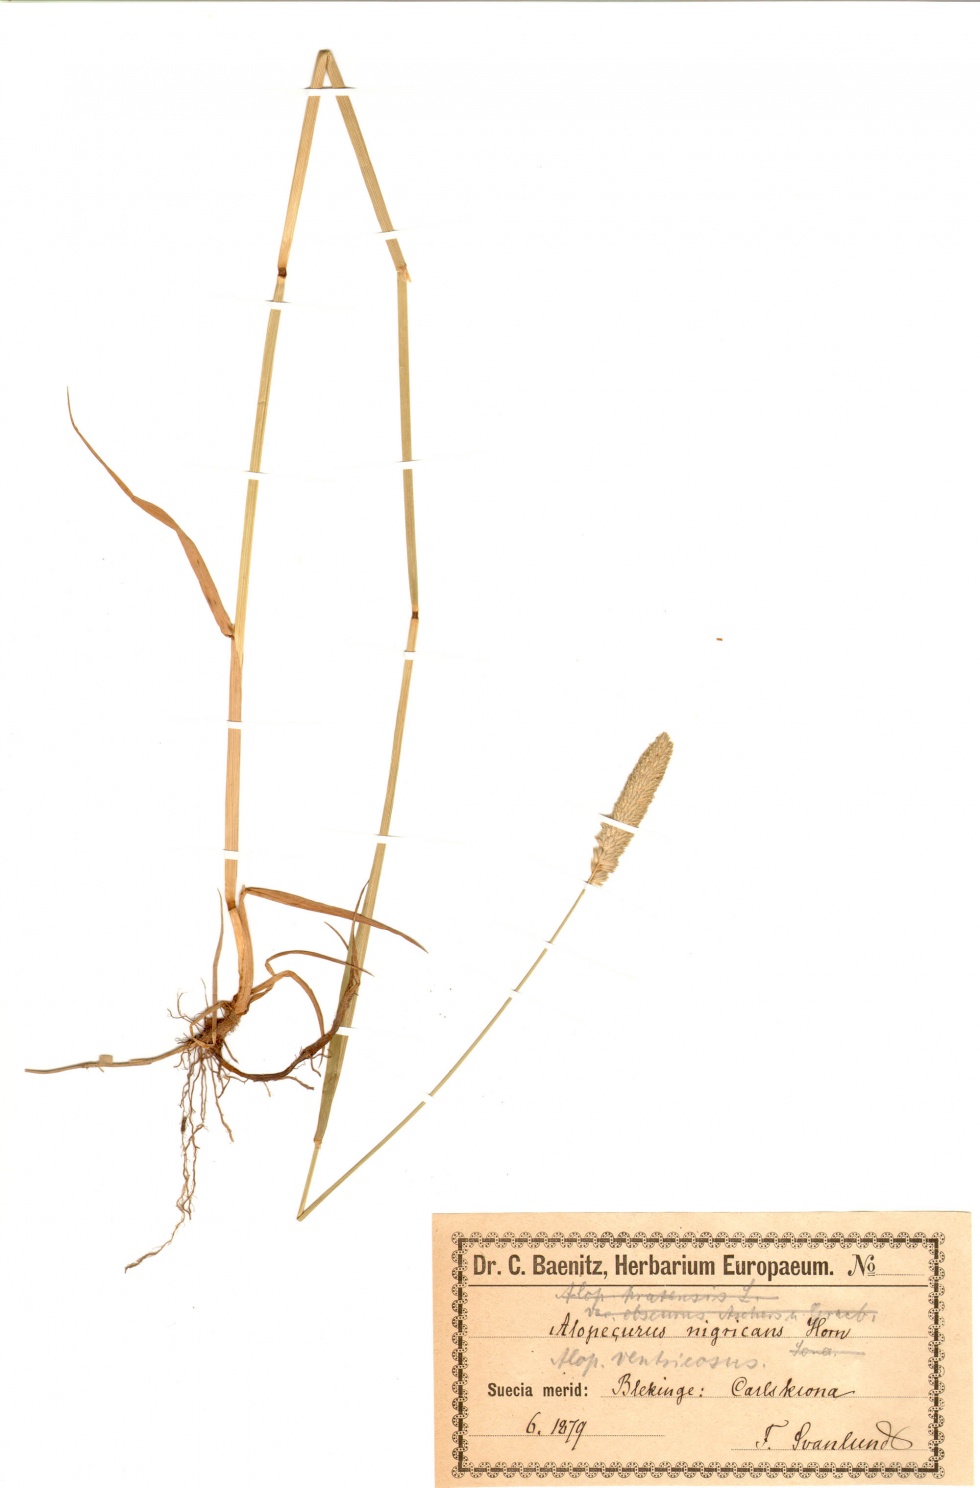 Rohr-Fuchsschwanzgras - Alopecurus arundinaceus Poir. (Naturhistorisches Museum Mainz / Landessammlung für Naturkunde Rheinland-Pfalz CC BY-NC-SA)